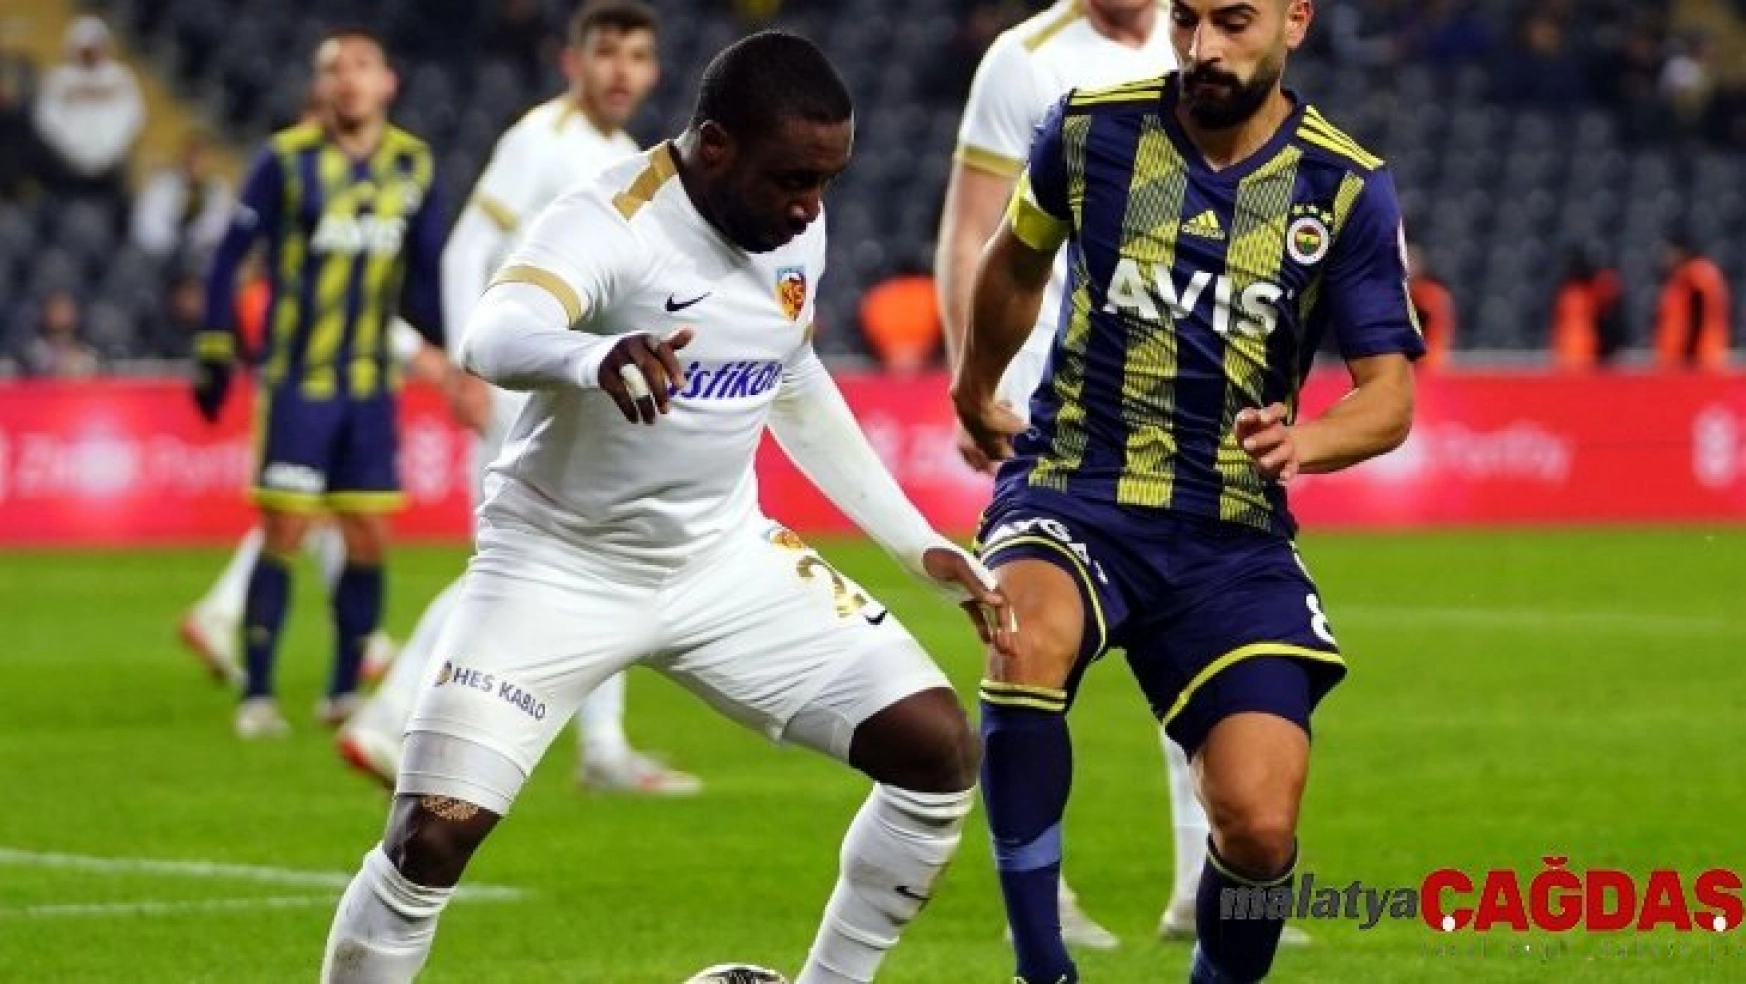 Fenerbahçe 2 golle turladı